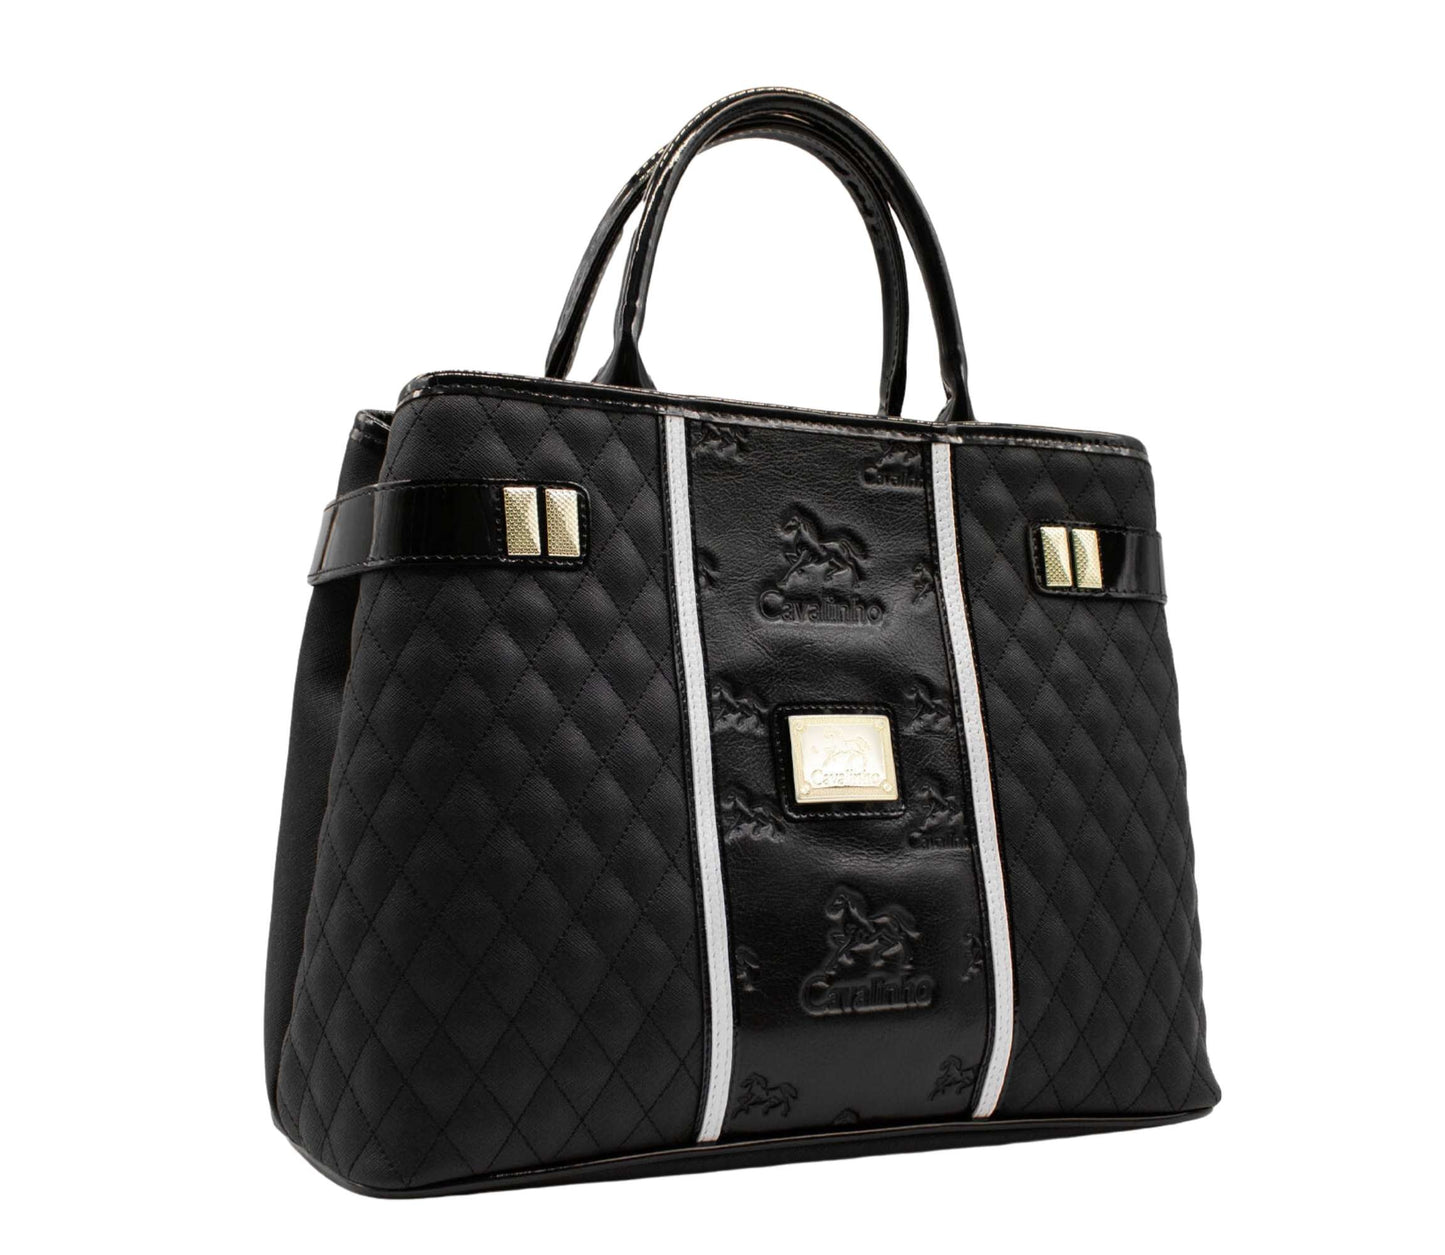 Cavalinho Royal Handbag - Black and White - 18390145.21.99_2